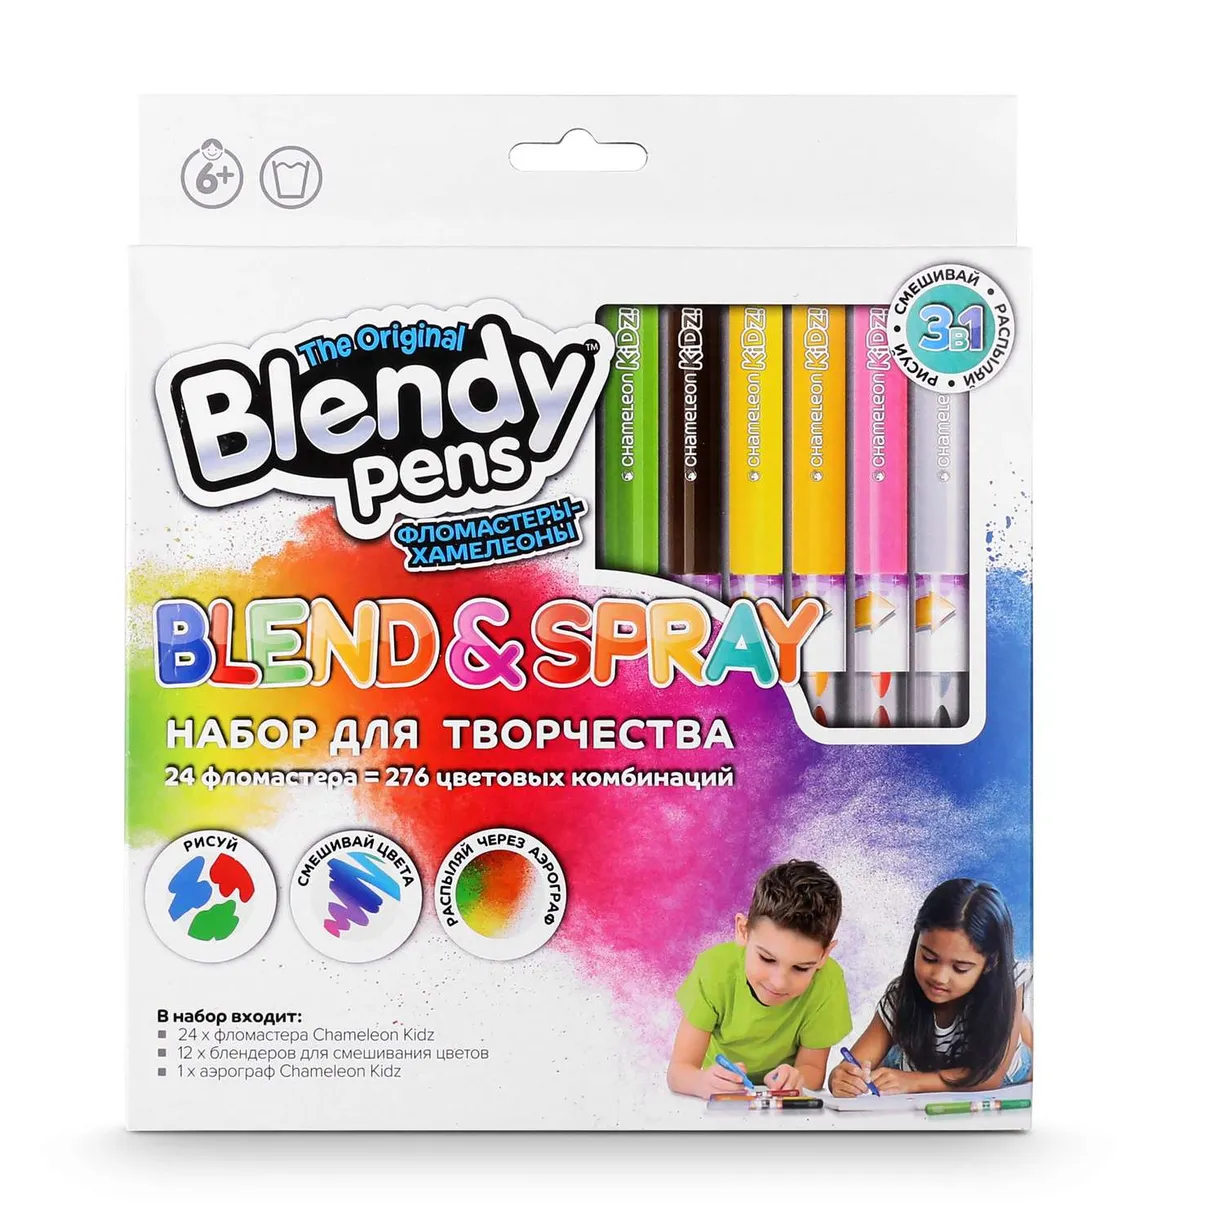 Набор фломастеров Blendy pens 24 шт набор фломастеров blendy pens 24 шт